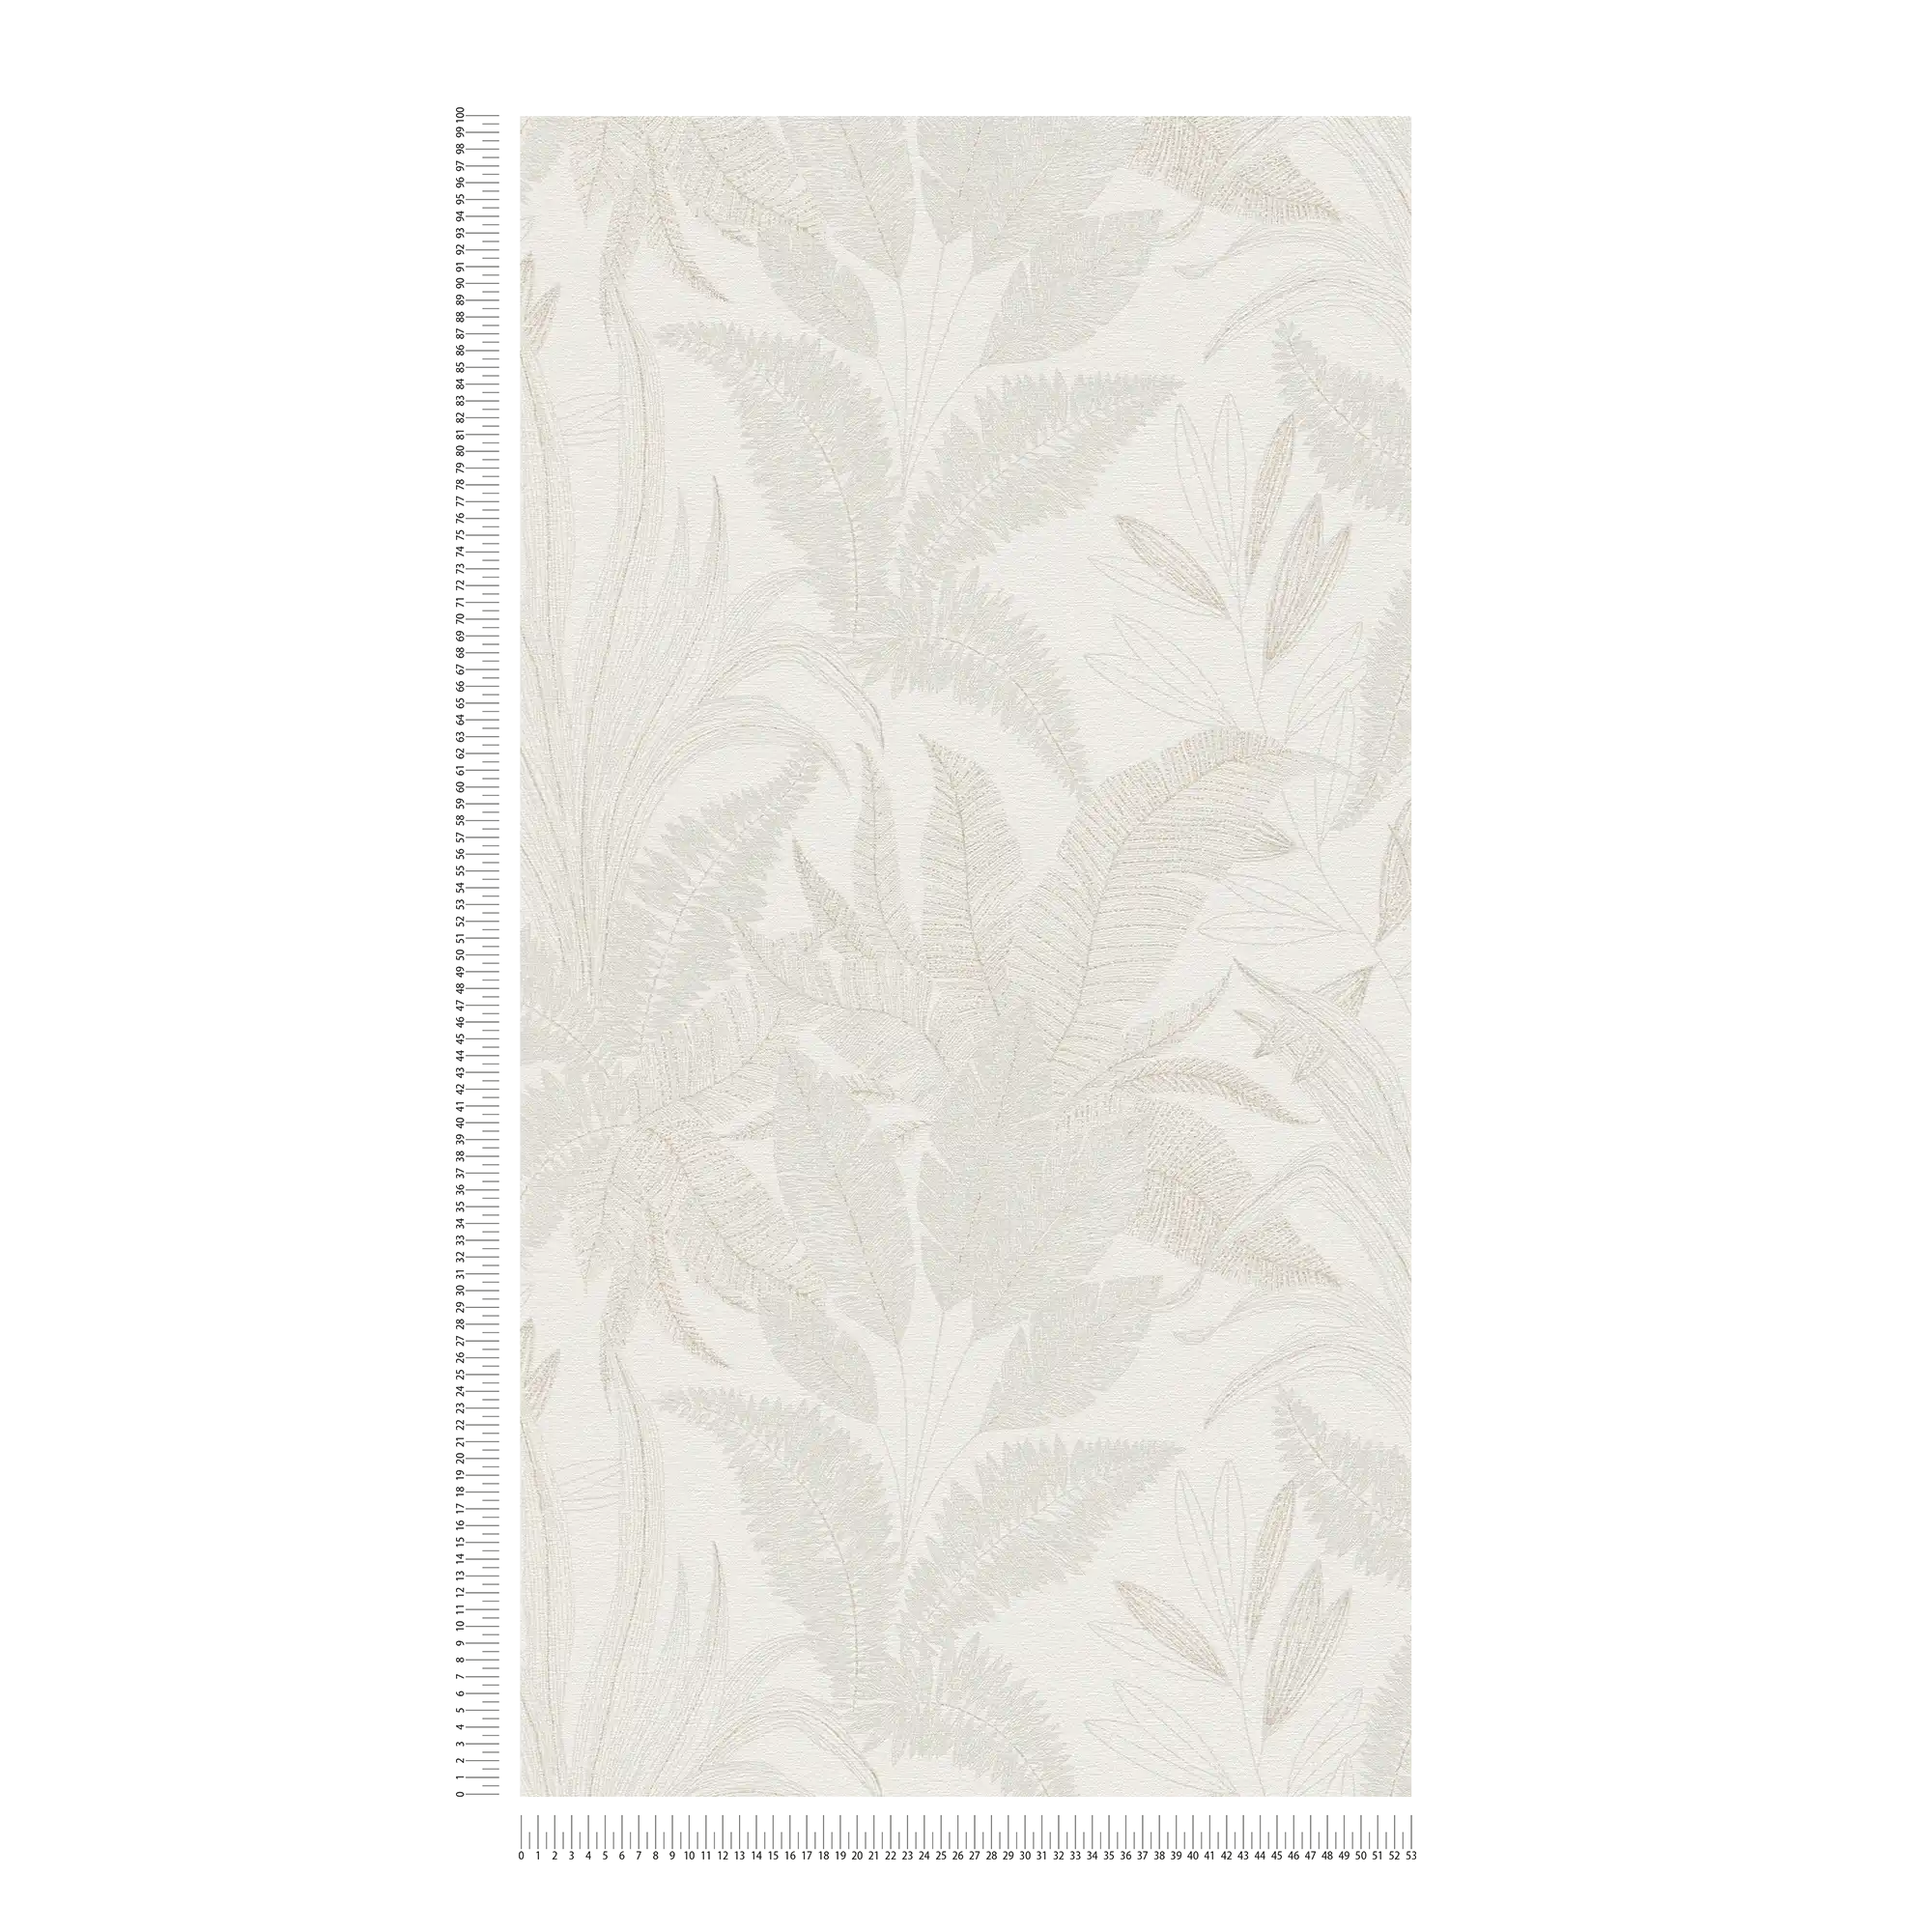             papier peint en papier intissé floral avec motifs de feuilles dans des couleurs douces - crème, beige
        